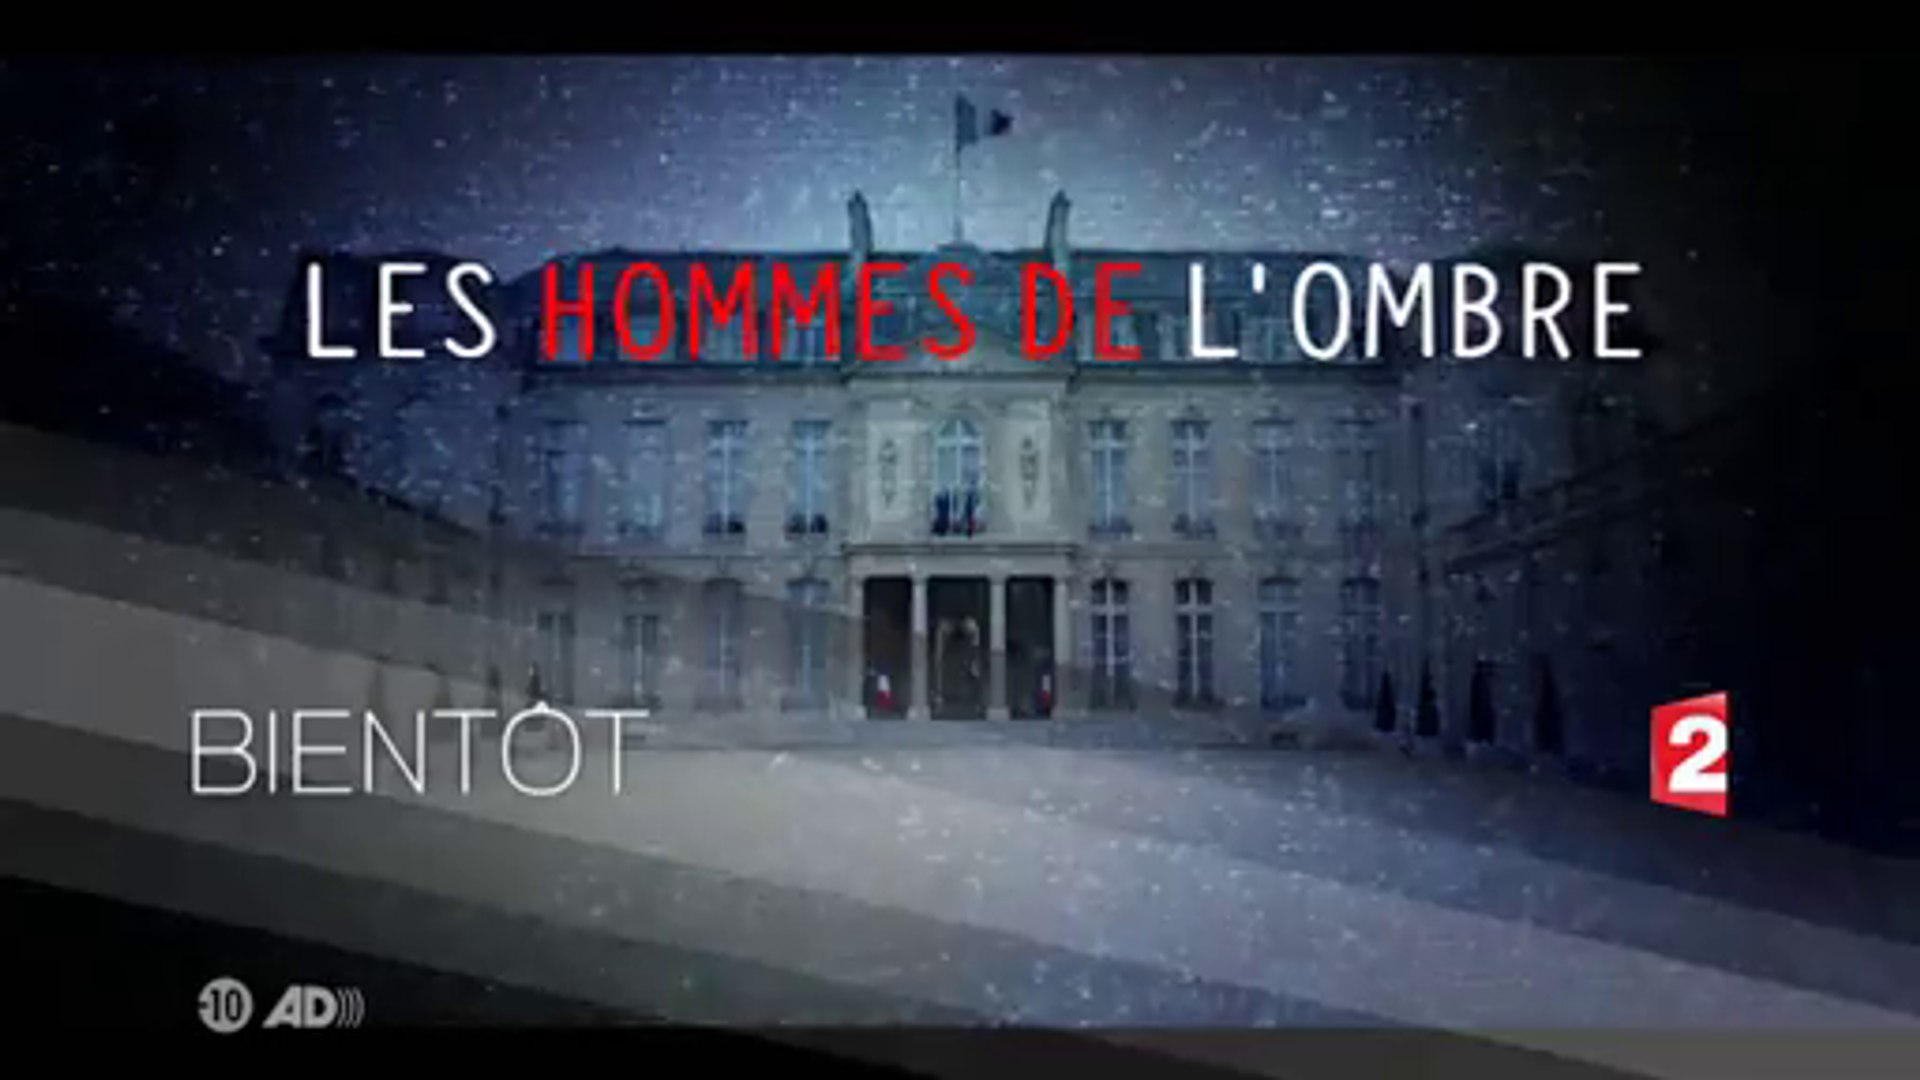 Les hommes de l'ombre - saison 3 - bientot sur France 2 - Vidéo Dailymotion